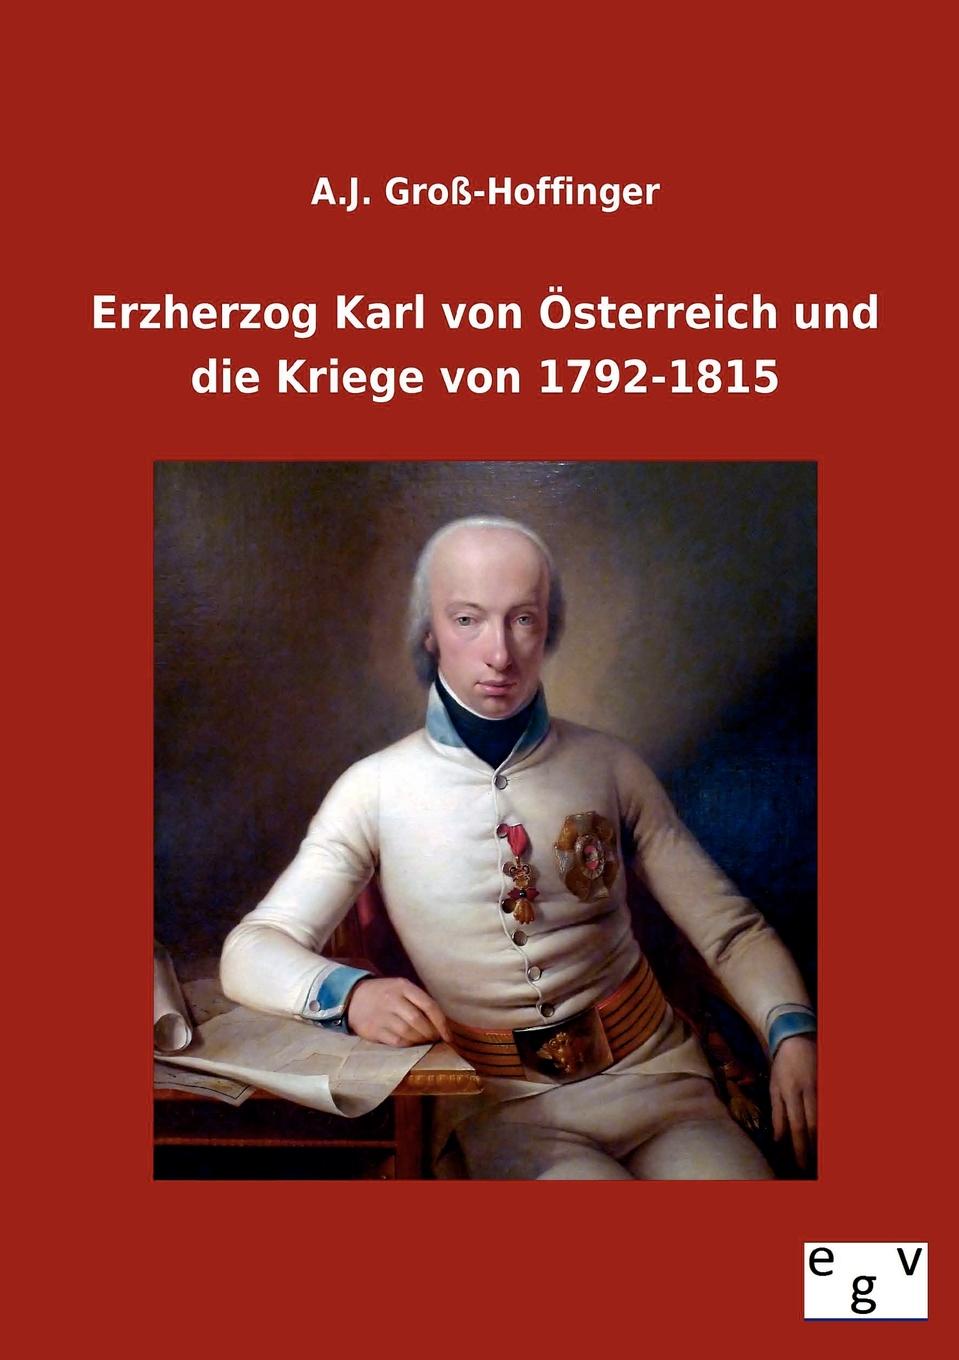 A. J. Gro -Hoffinger, A. J. Gross-Hoffinger Erzherzog Karl Von Osterreich Und Die Kriege Von 1792-1815